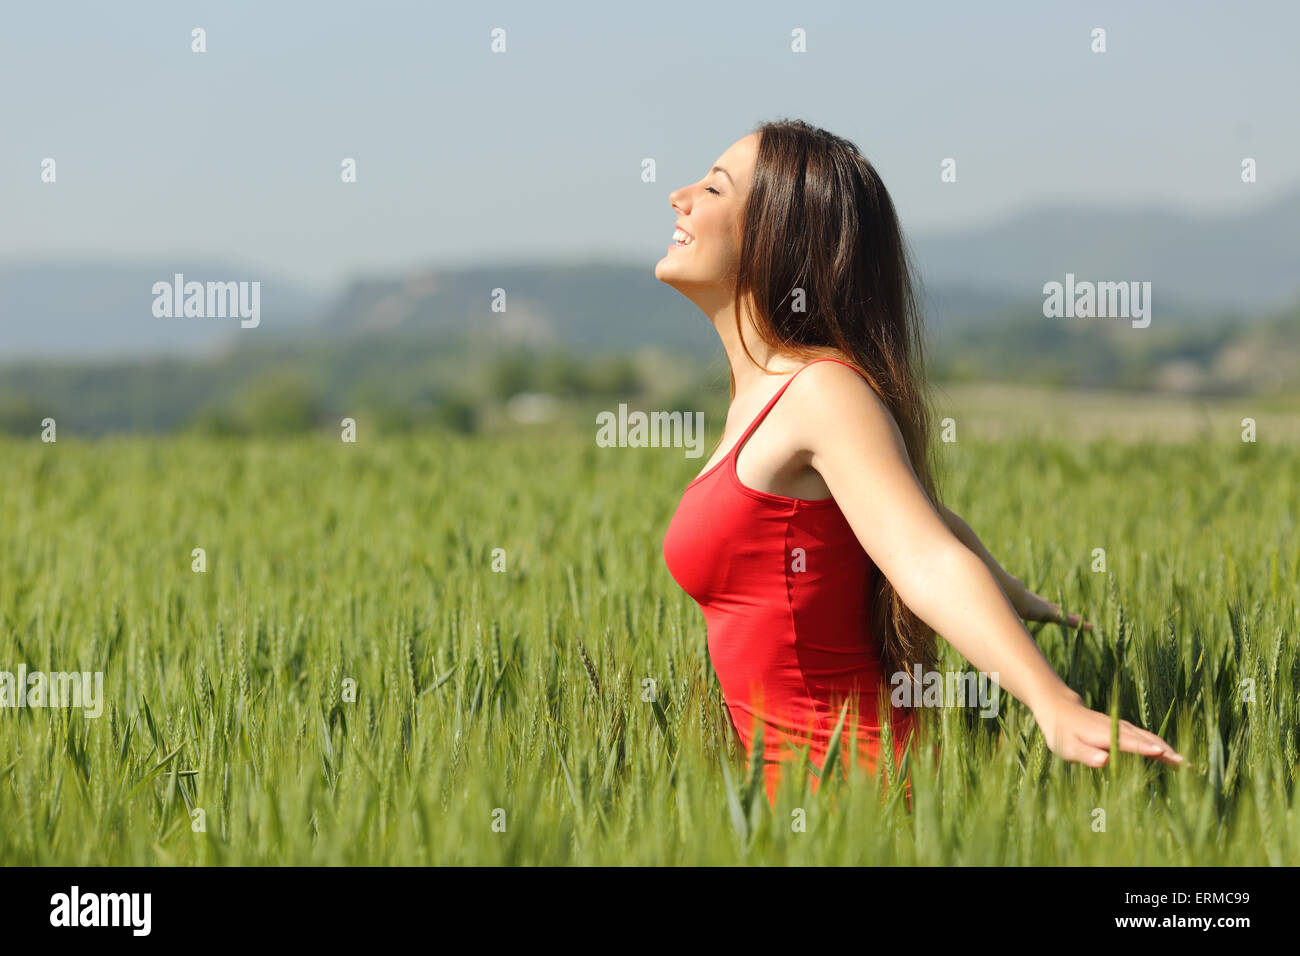 Profil d'une femme de respirer l'air frais dans un pré et toucher le blé vert portant une chemise rouge Banque D'Images